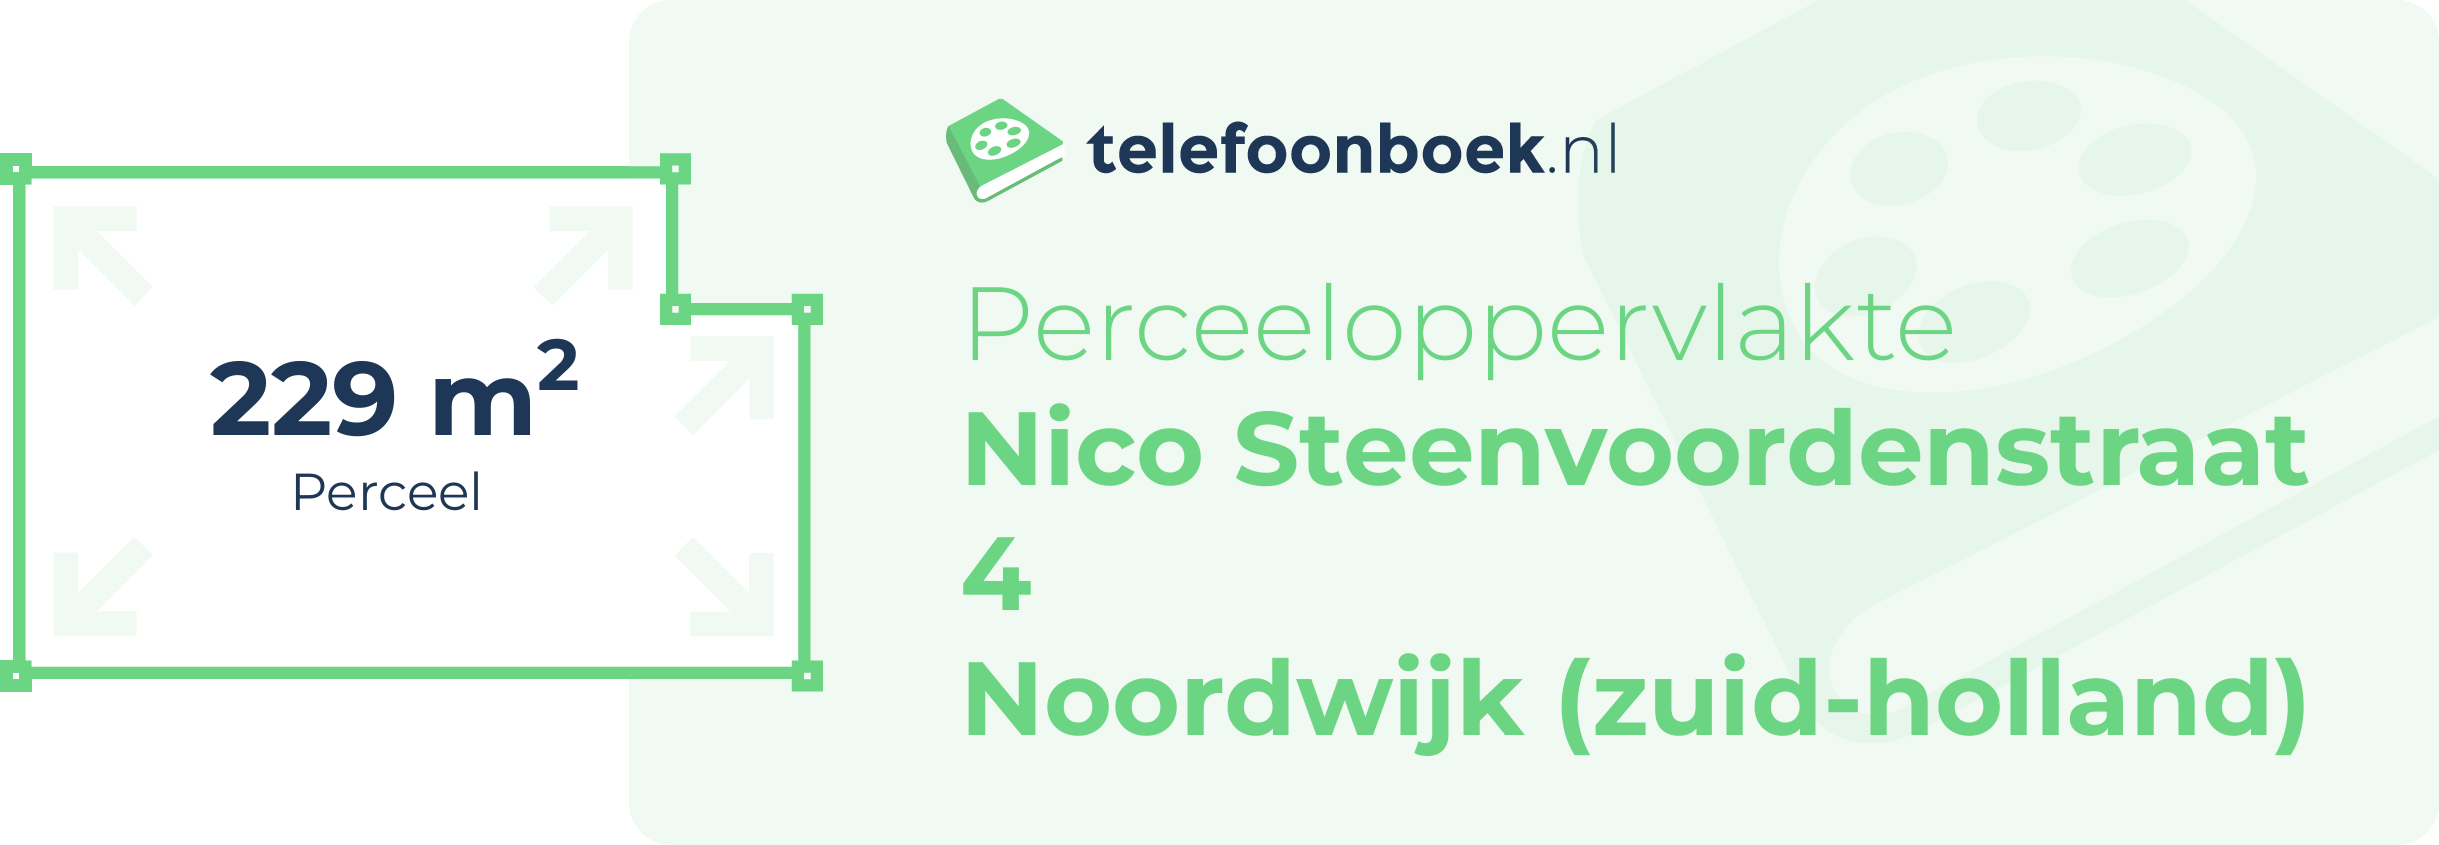 Perceeloppervlakte Nico Steenvoordenstraat 4 Noordwijk (Zuid-Holland)